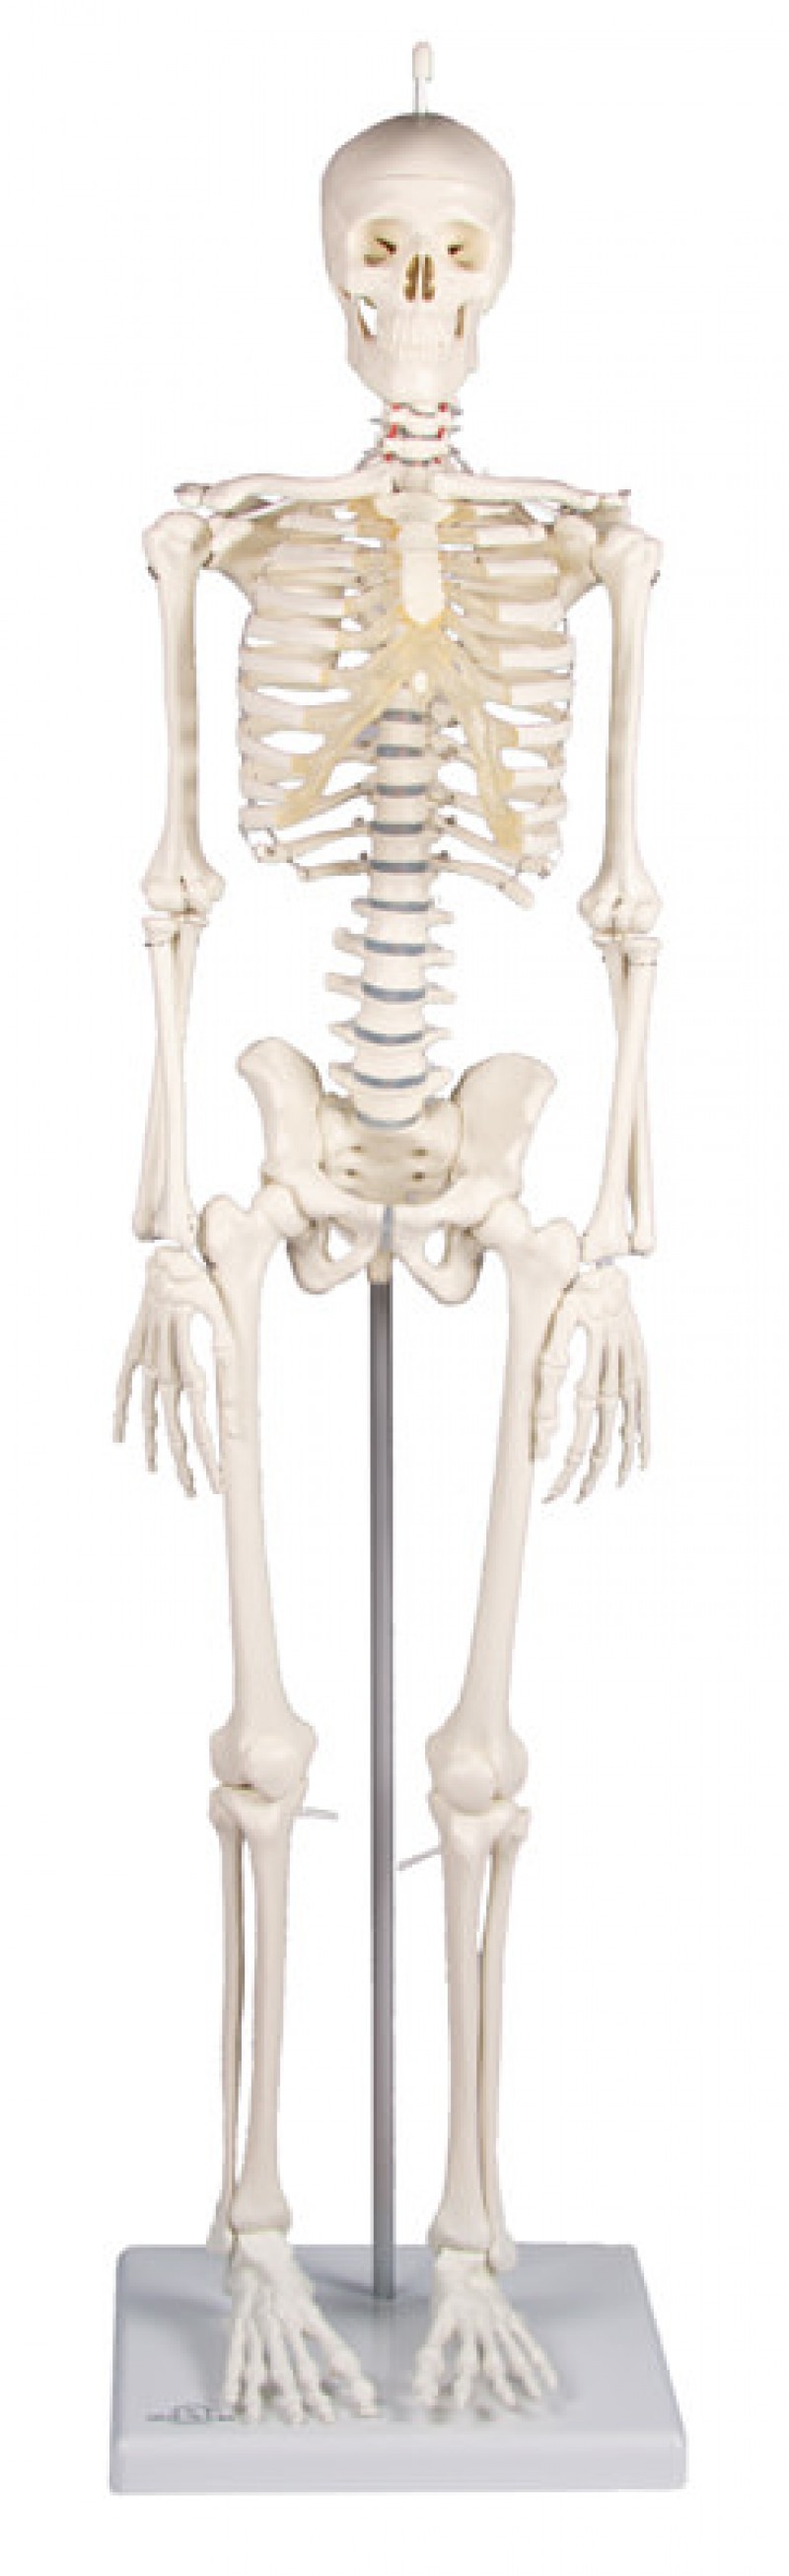 Miniaturowy szkielet człowieka Patryk - zdjecie nr: 1